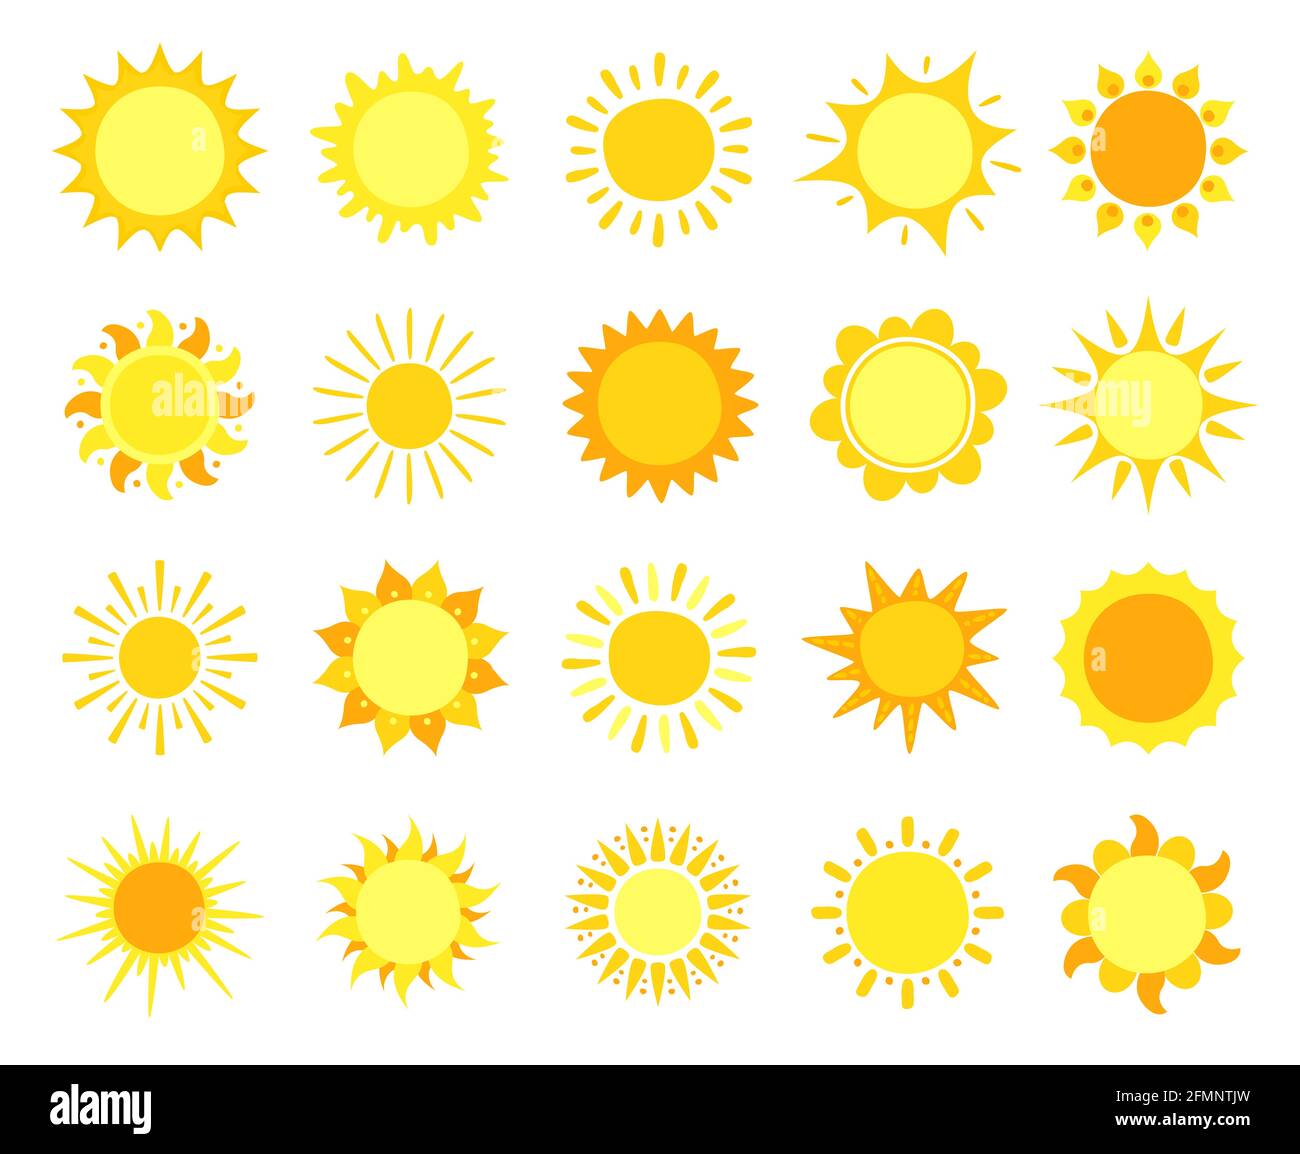 Sonnensymbole. Sonnenschein, heiße Sommer- und Sonnenaufgangssymbole, goldene Sonnenkreise, solare und sonnige Wetterzeichen Vektorset. Leuchtende Sonnenstrahlen und unterschiedlich geformte Strahlen für Sonnenaufgang oder Sonnenuntergang Stock Vektor